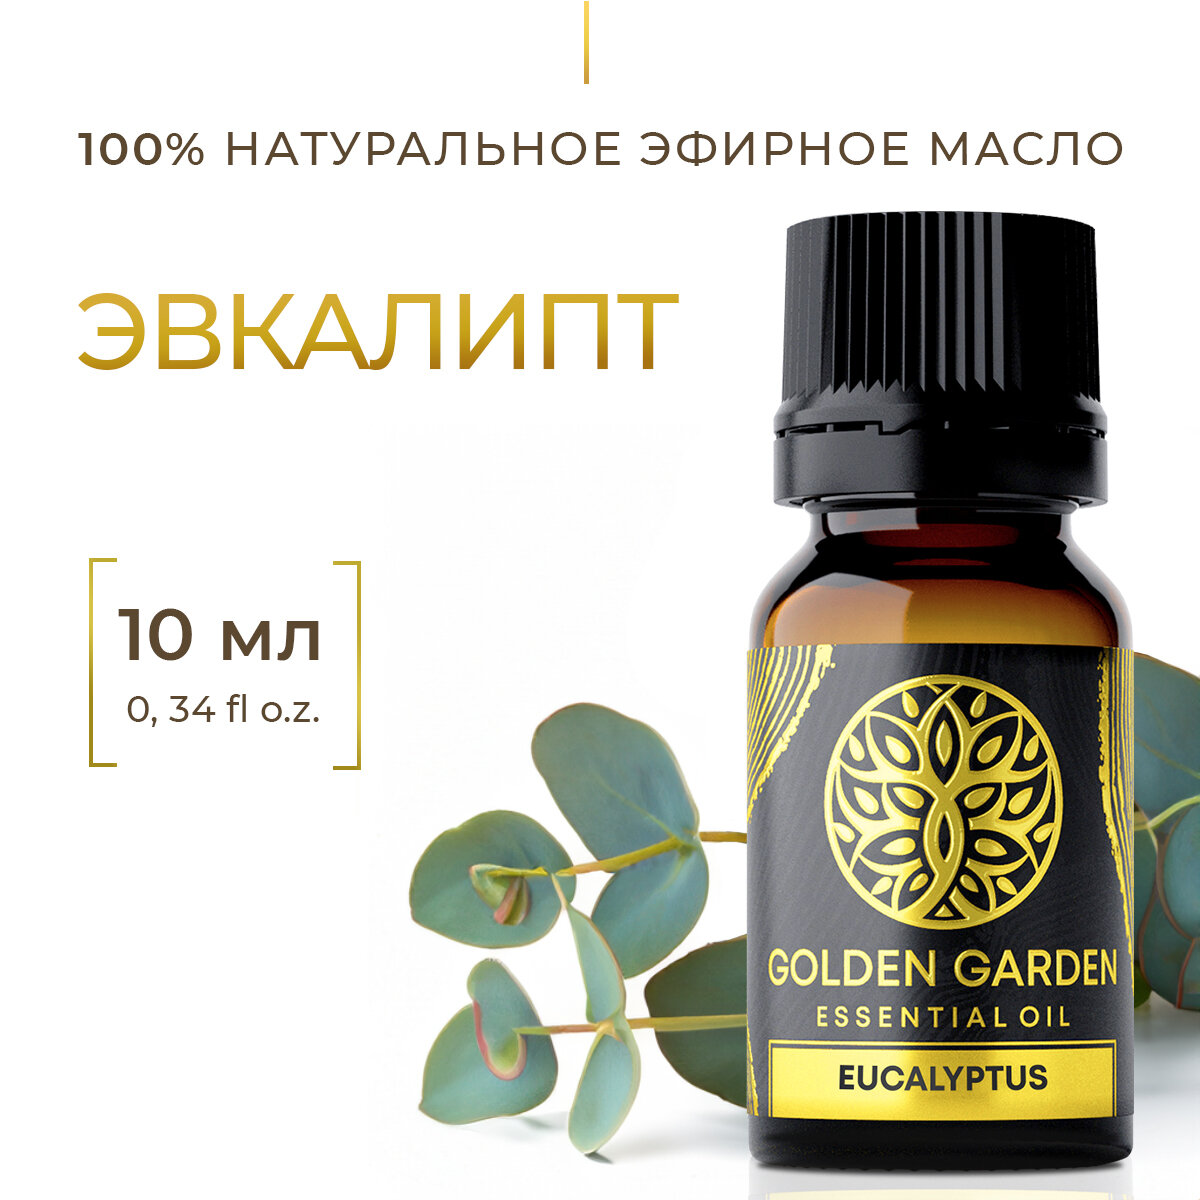 Натуральное эфирное масло эвкалипта 10мл Golden Garden для ароматерапии диффузора бани и сауны